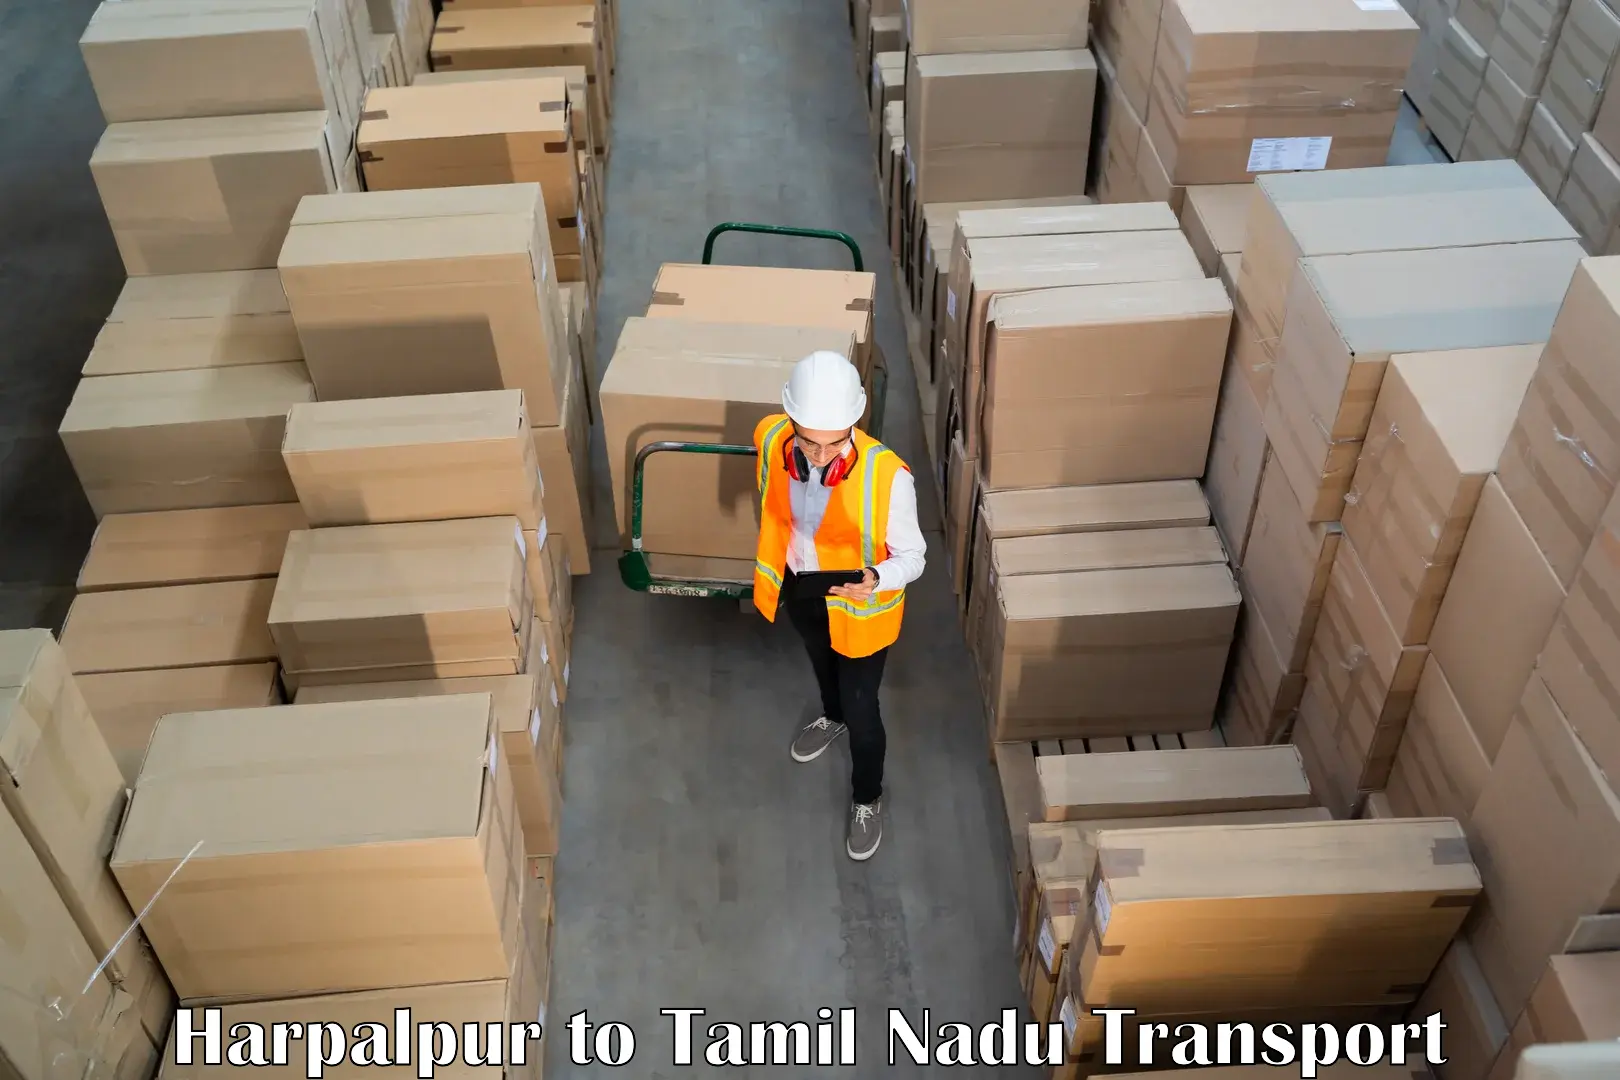 Lorry transport service Harpalpur to Thiruvadanai